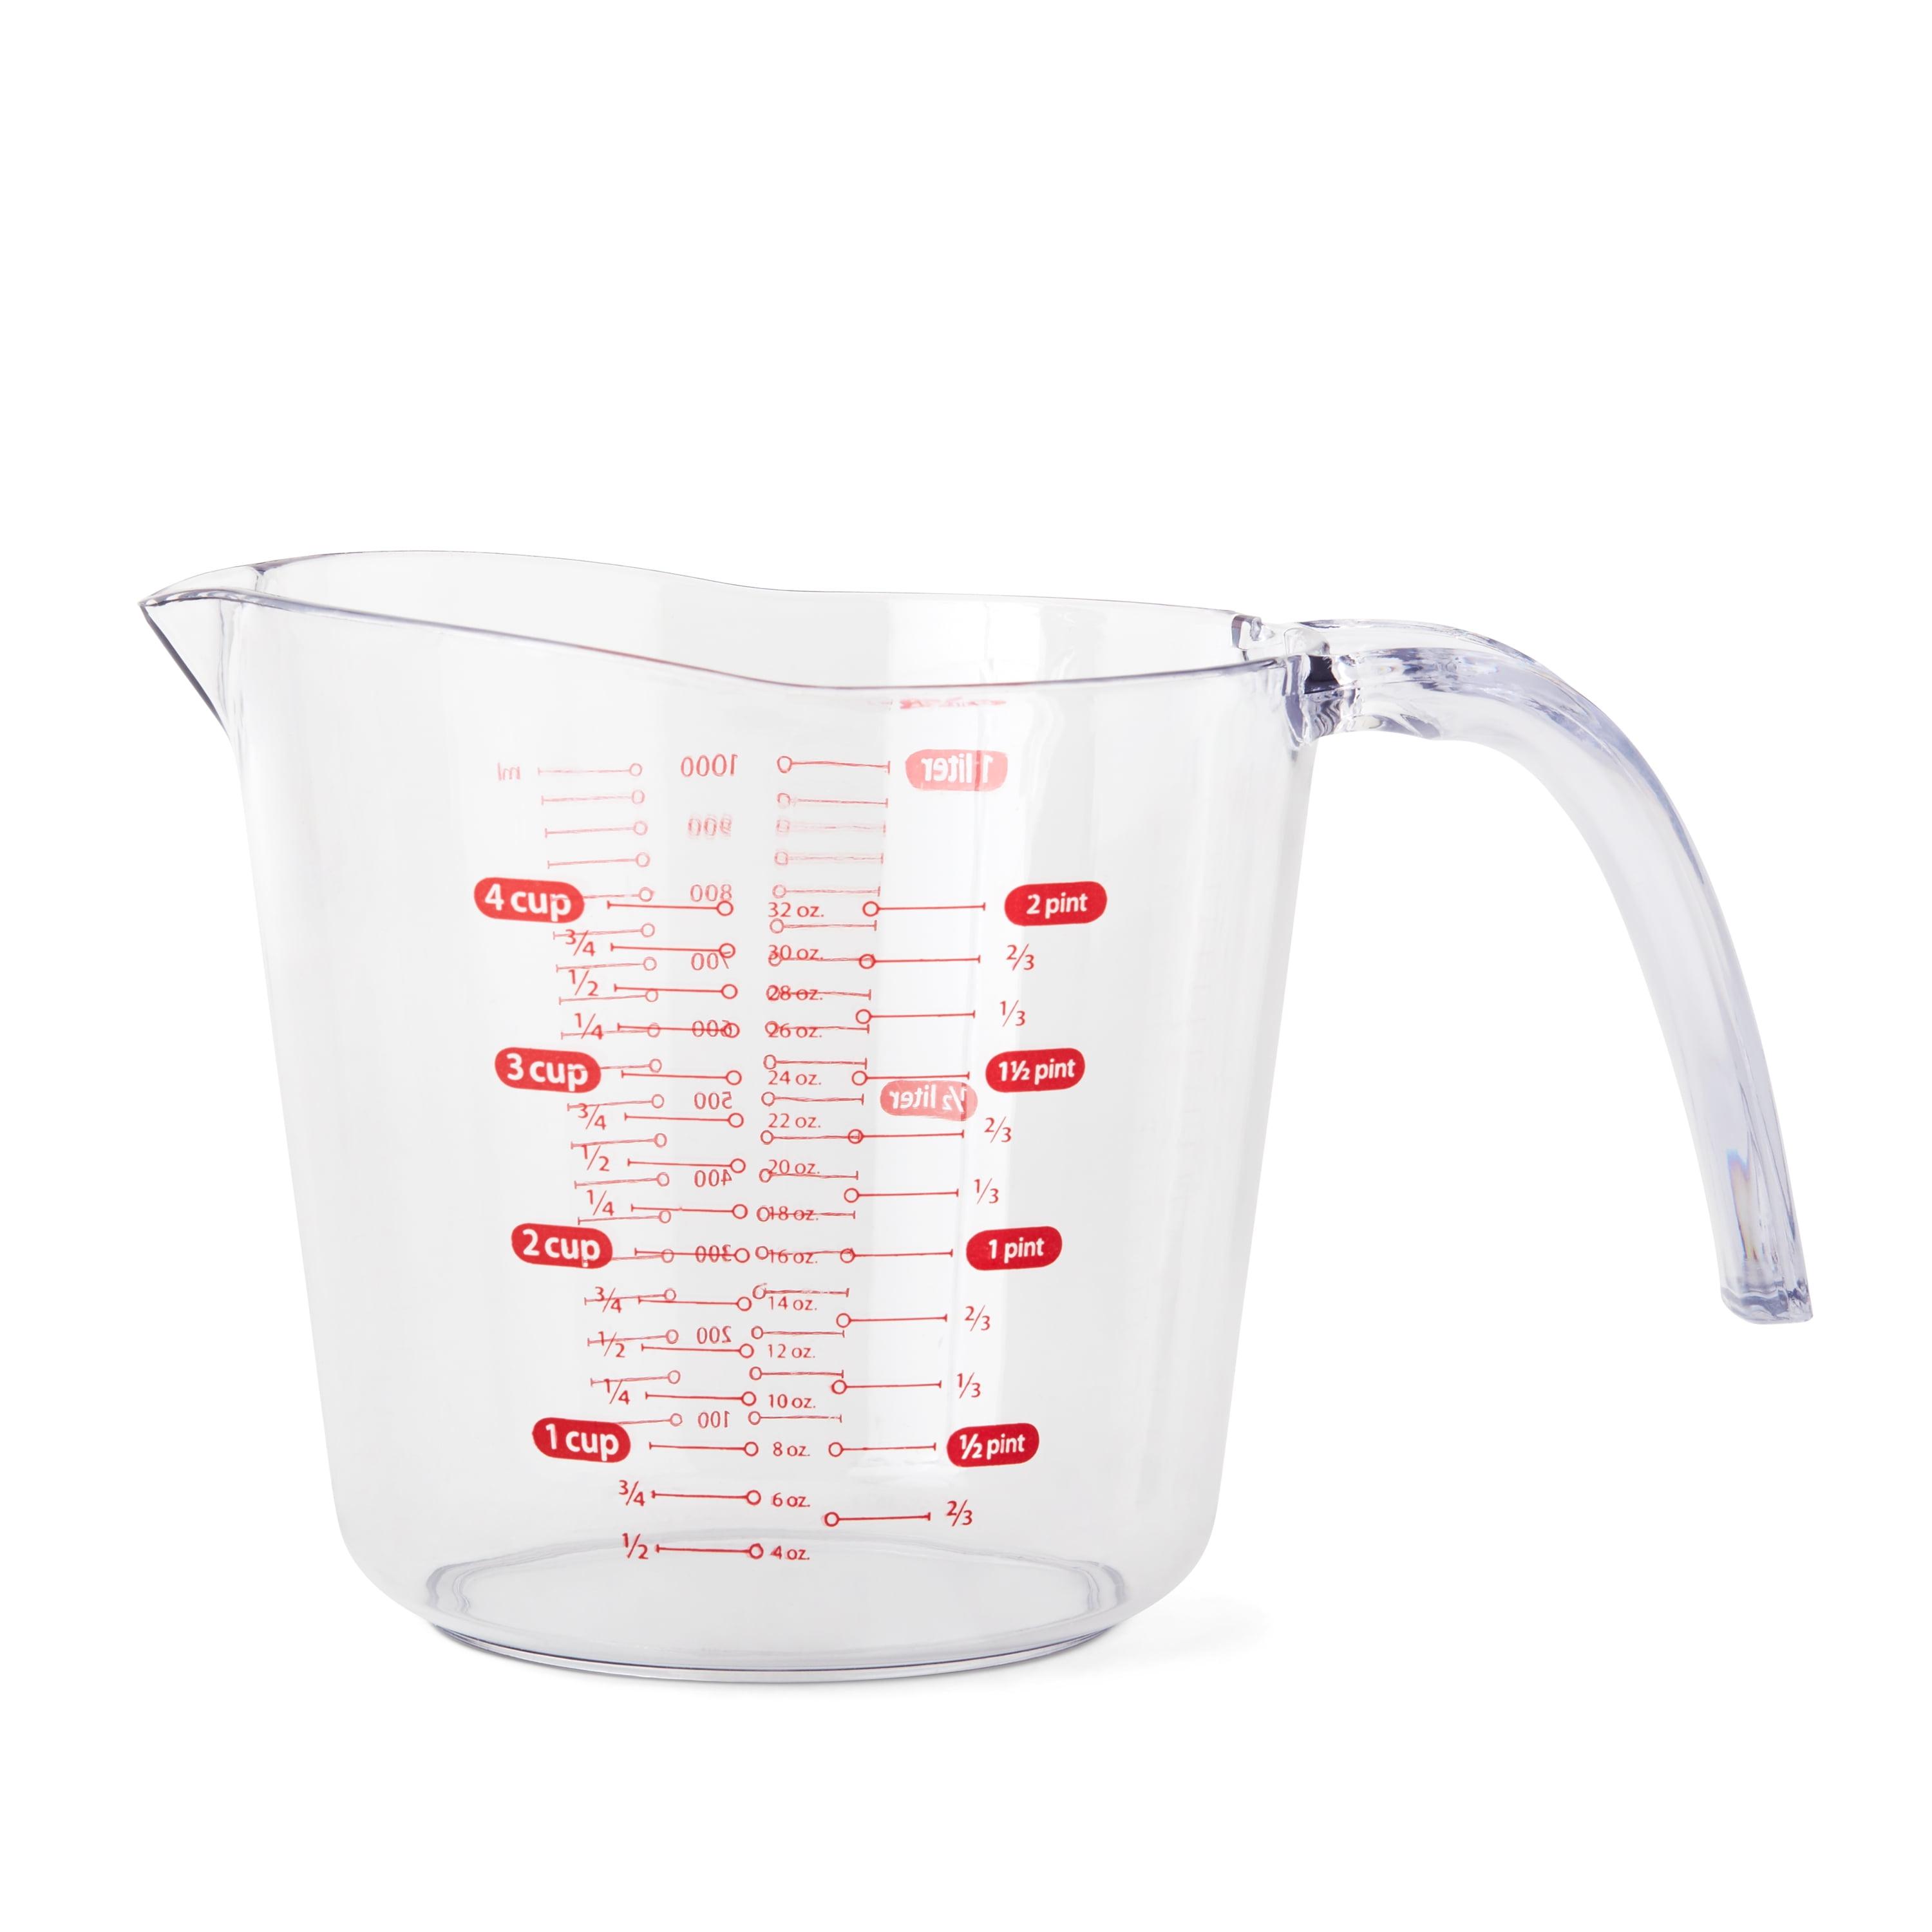 Clear Plastic Measuring Cup Jug pour Spout Tool Kitchen New K1P1 